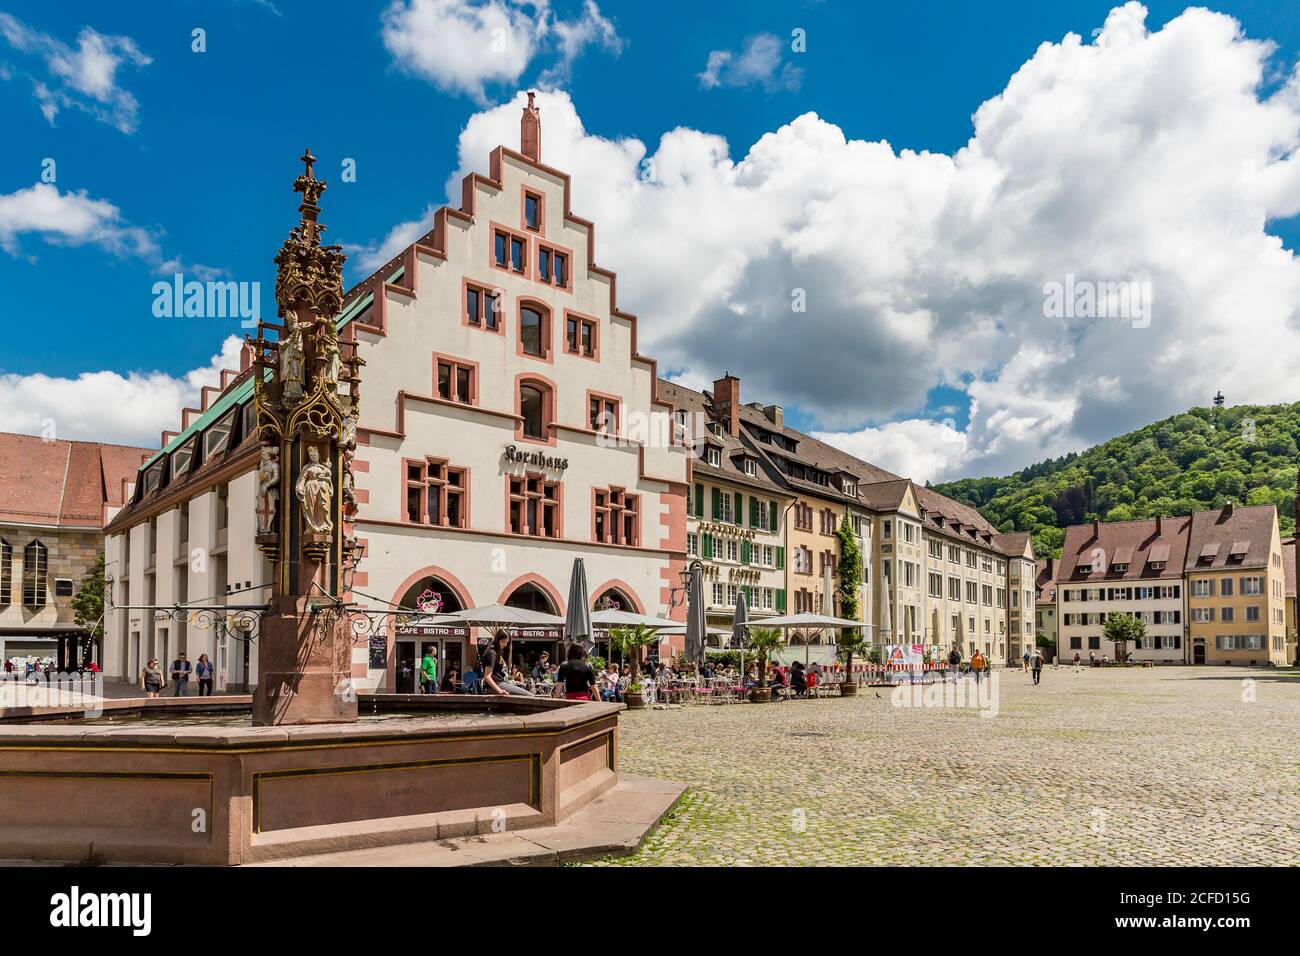 Fischbrunnen, Kornhaus, Münsterplatz, Freiburg, Freiburg im Breisgau, Germany, Europe Stock Photo